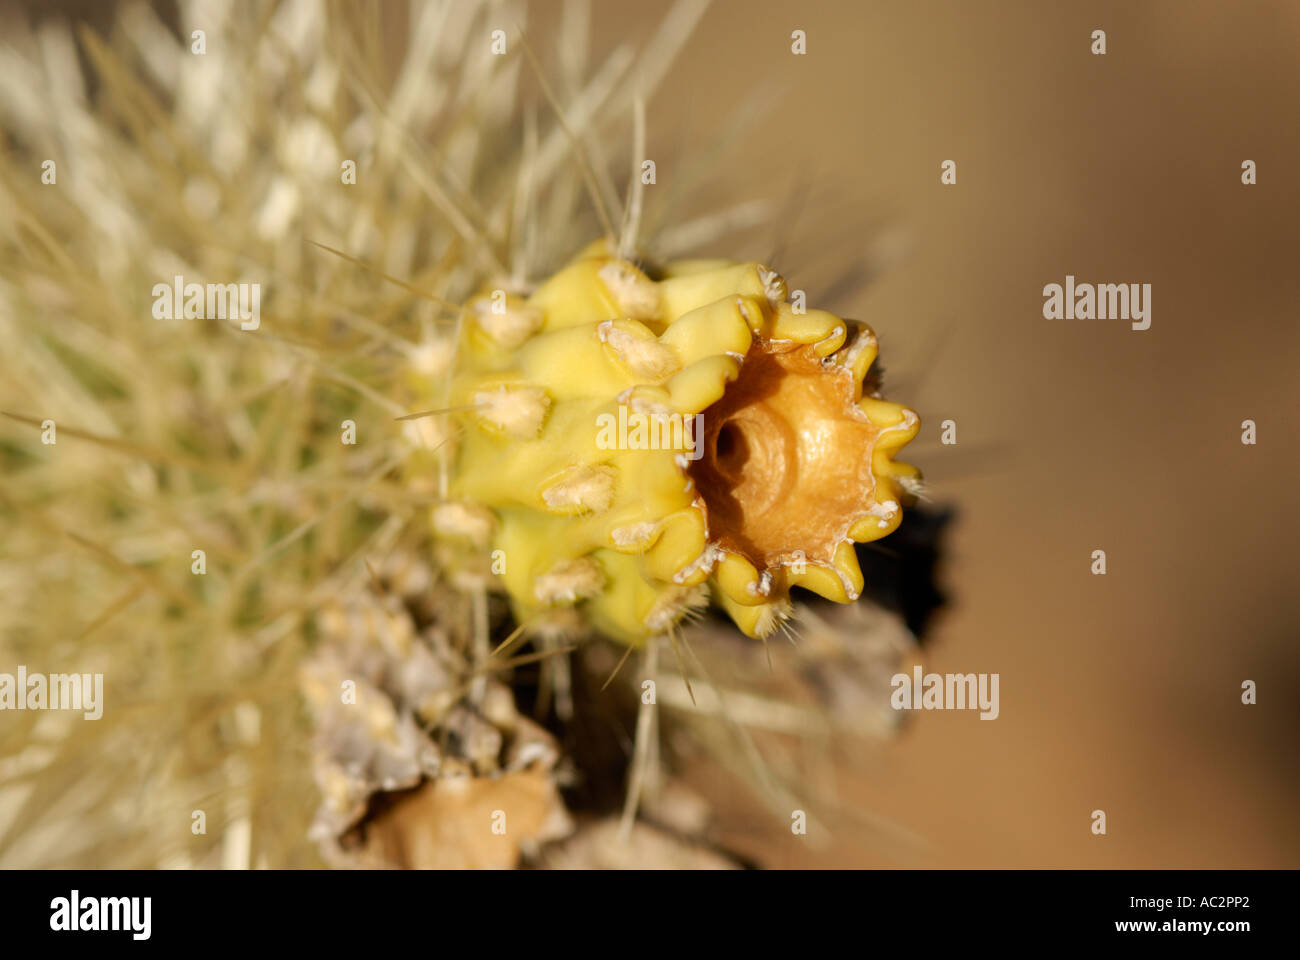 Cholla Cactus, Opuntia sp., en fleurs avec close-up de fleur jaune, au sud-ouest du désert américain Banque D'Images